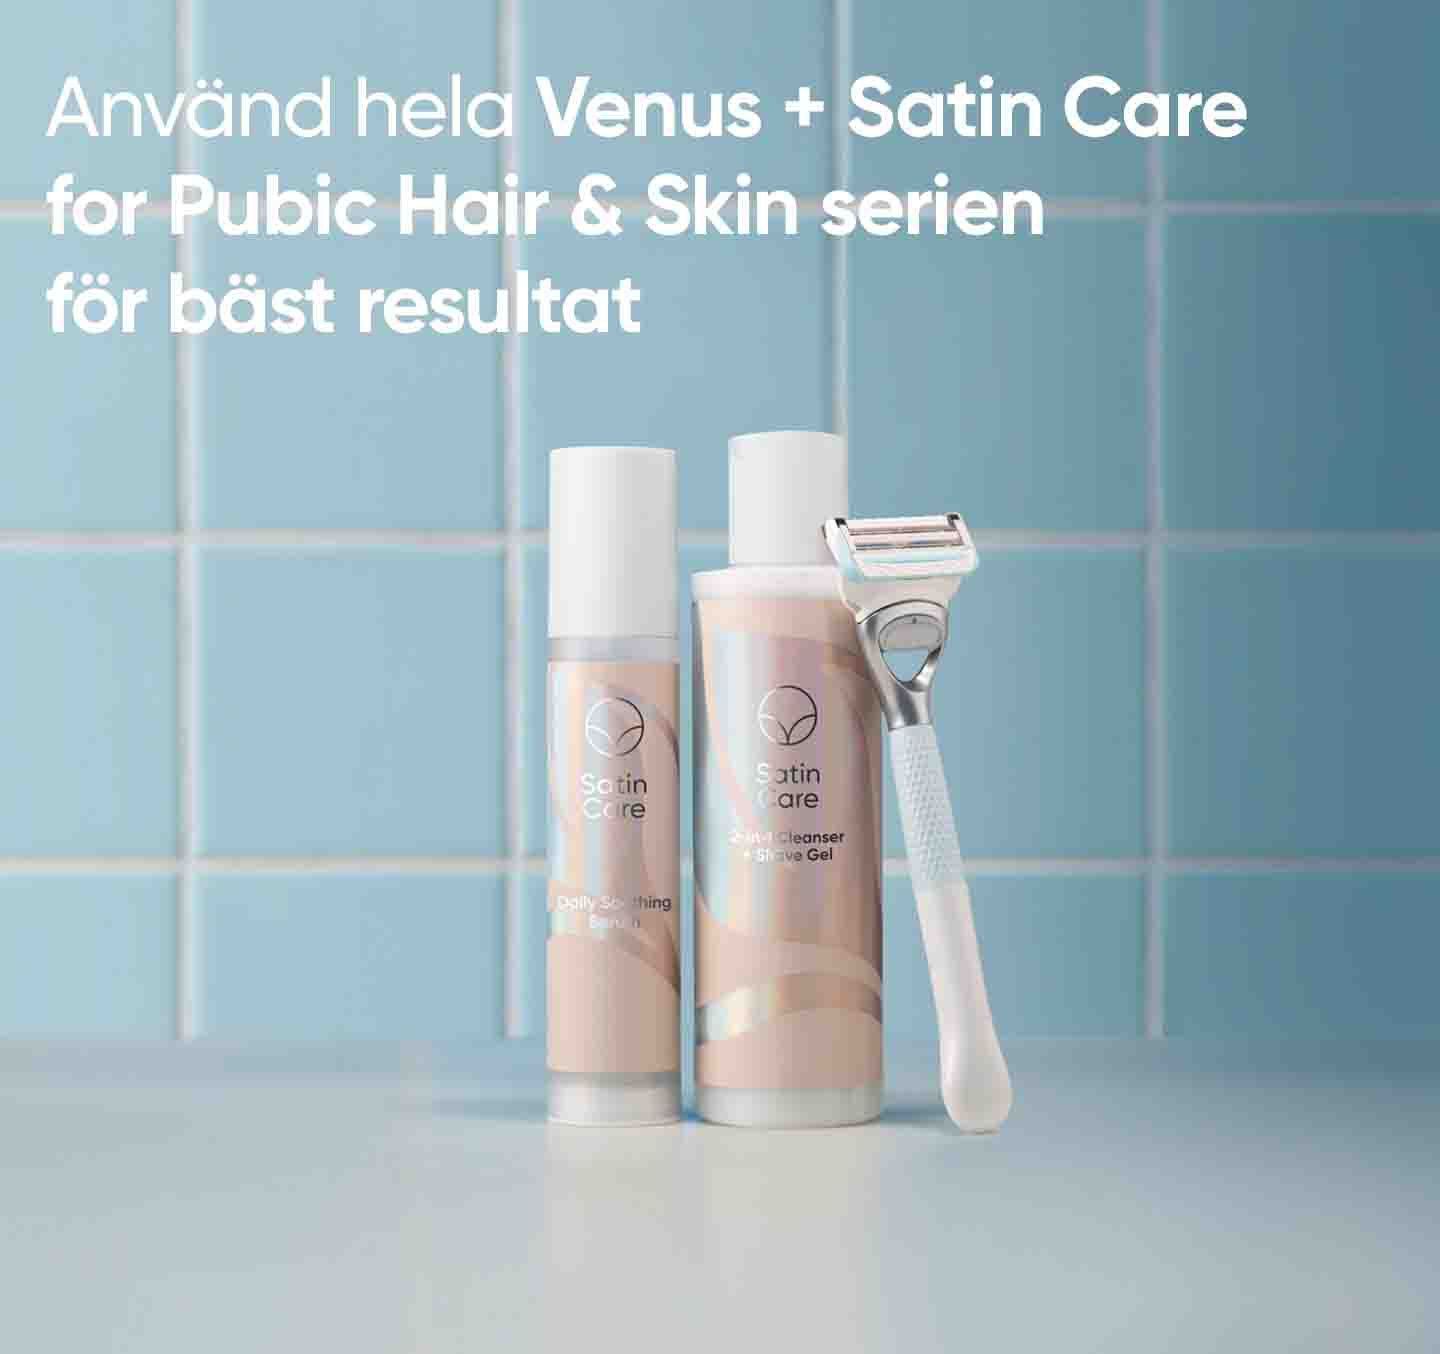 Gillette Venus Satin Care Smoothing Serum för intimområdet 50ml